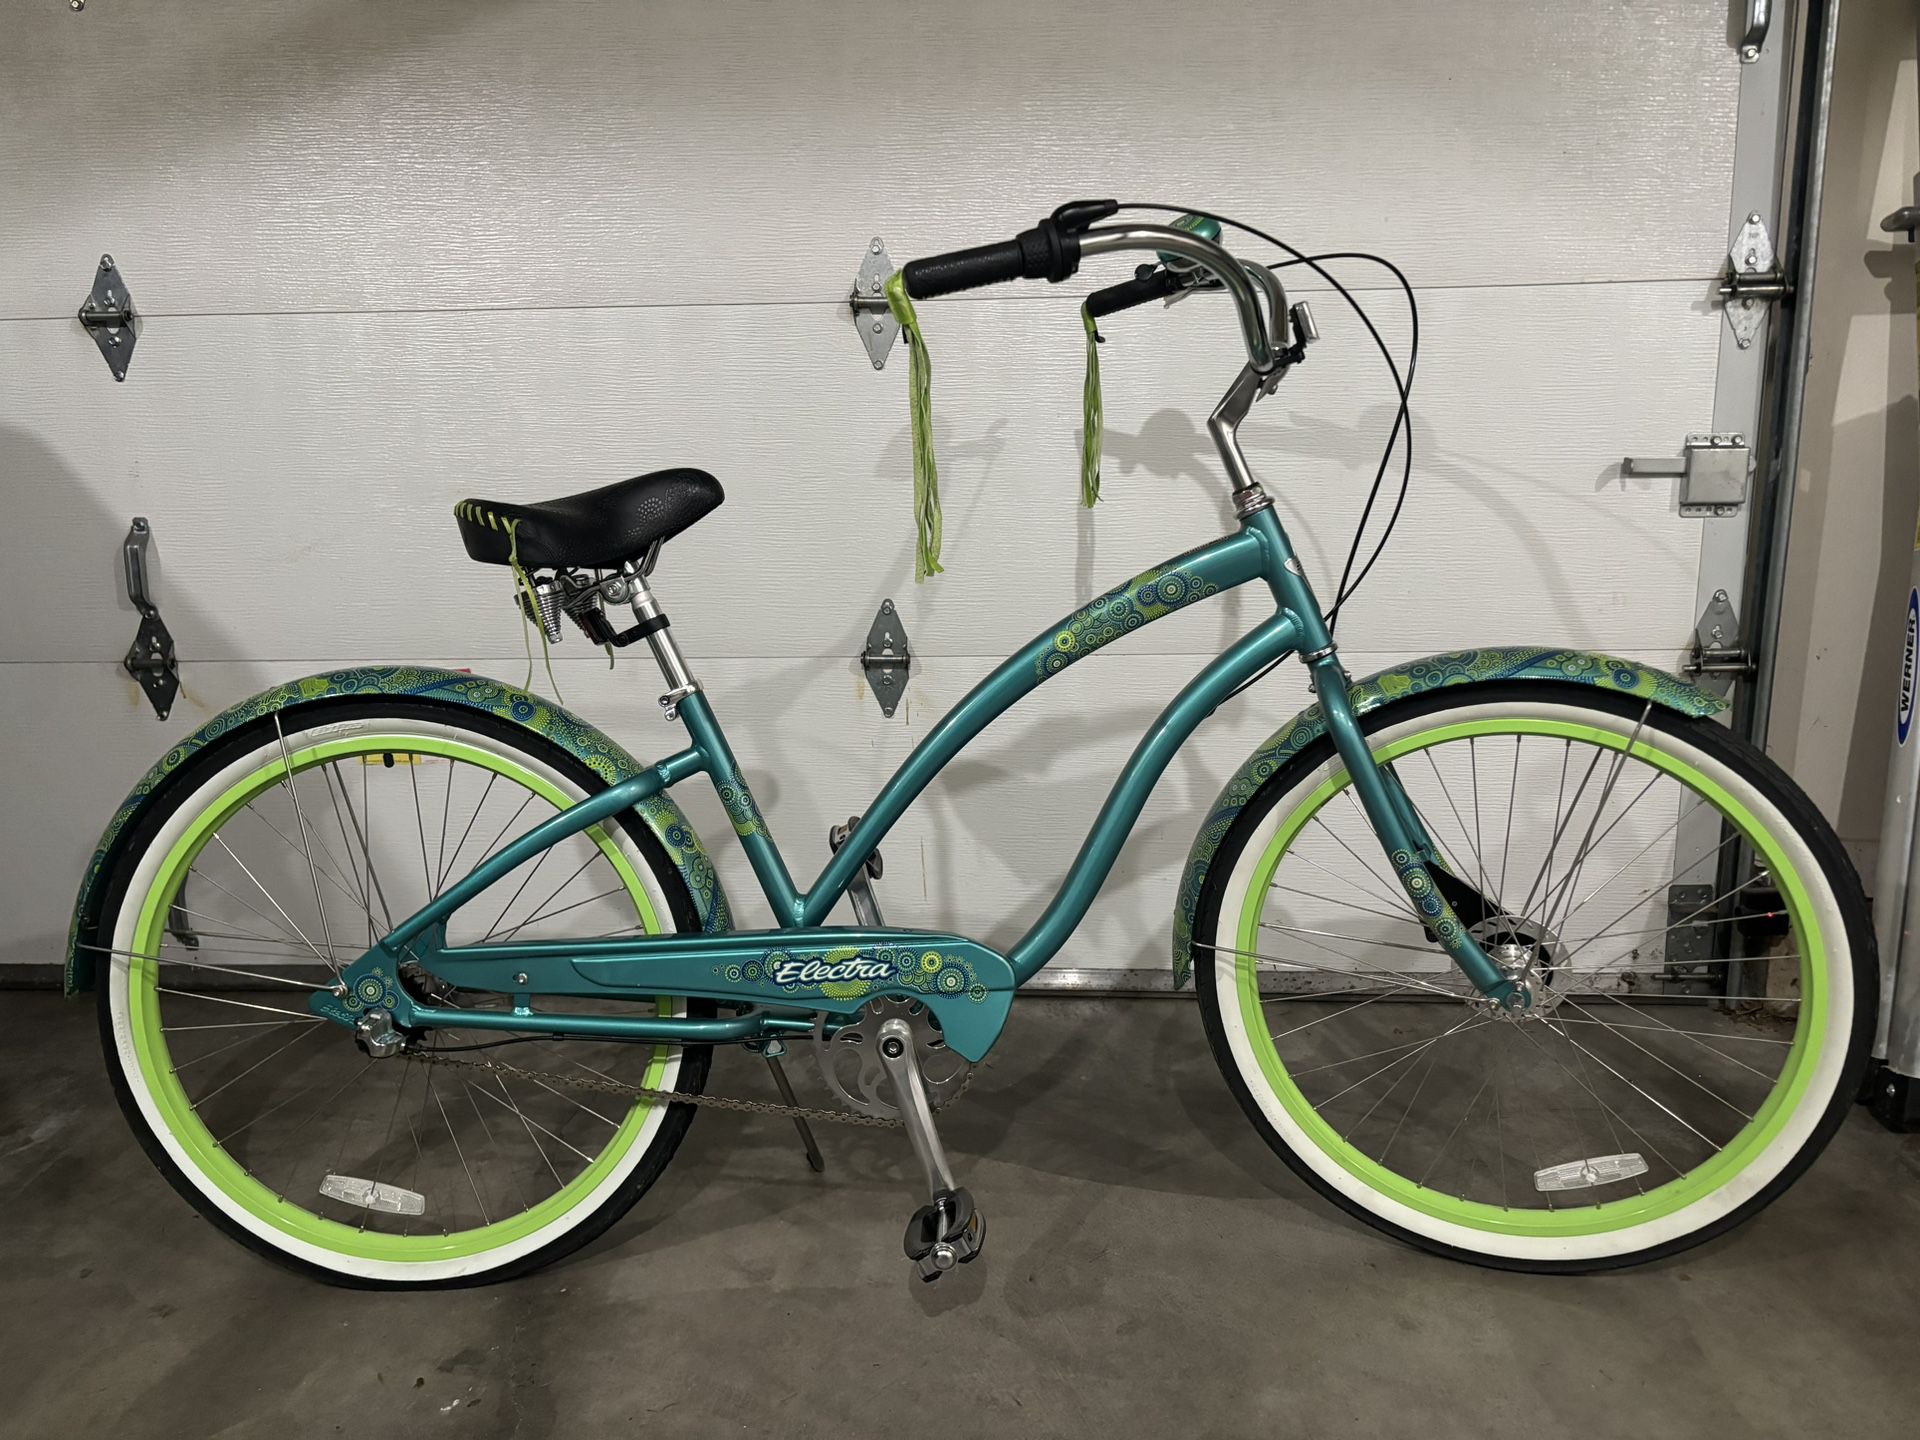 Electra Cruiser Bike - $125, Like New